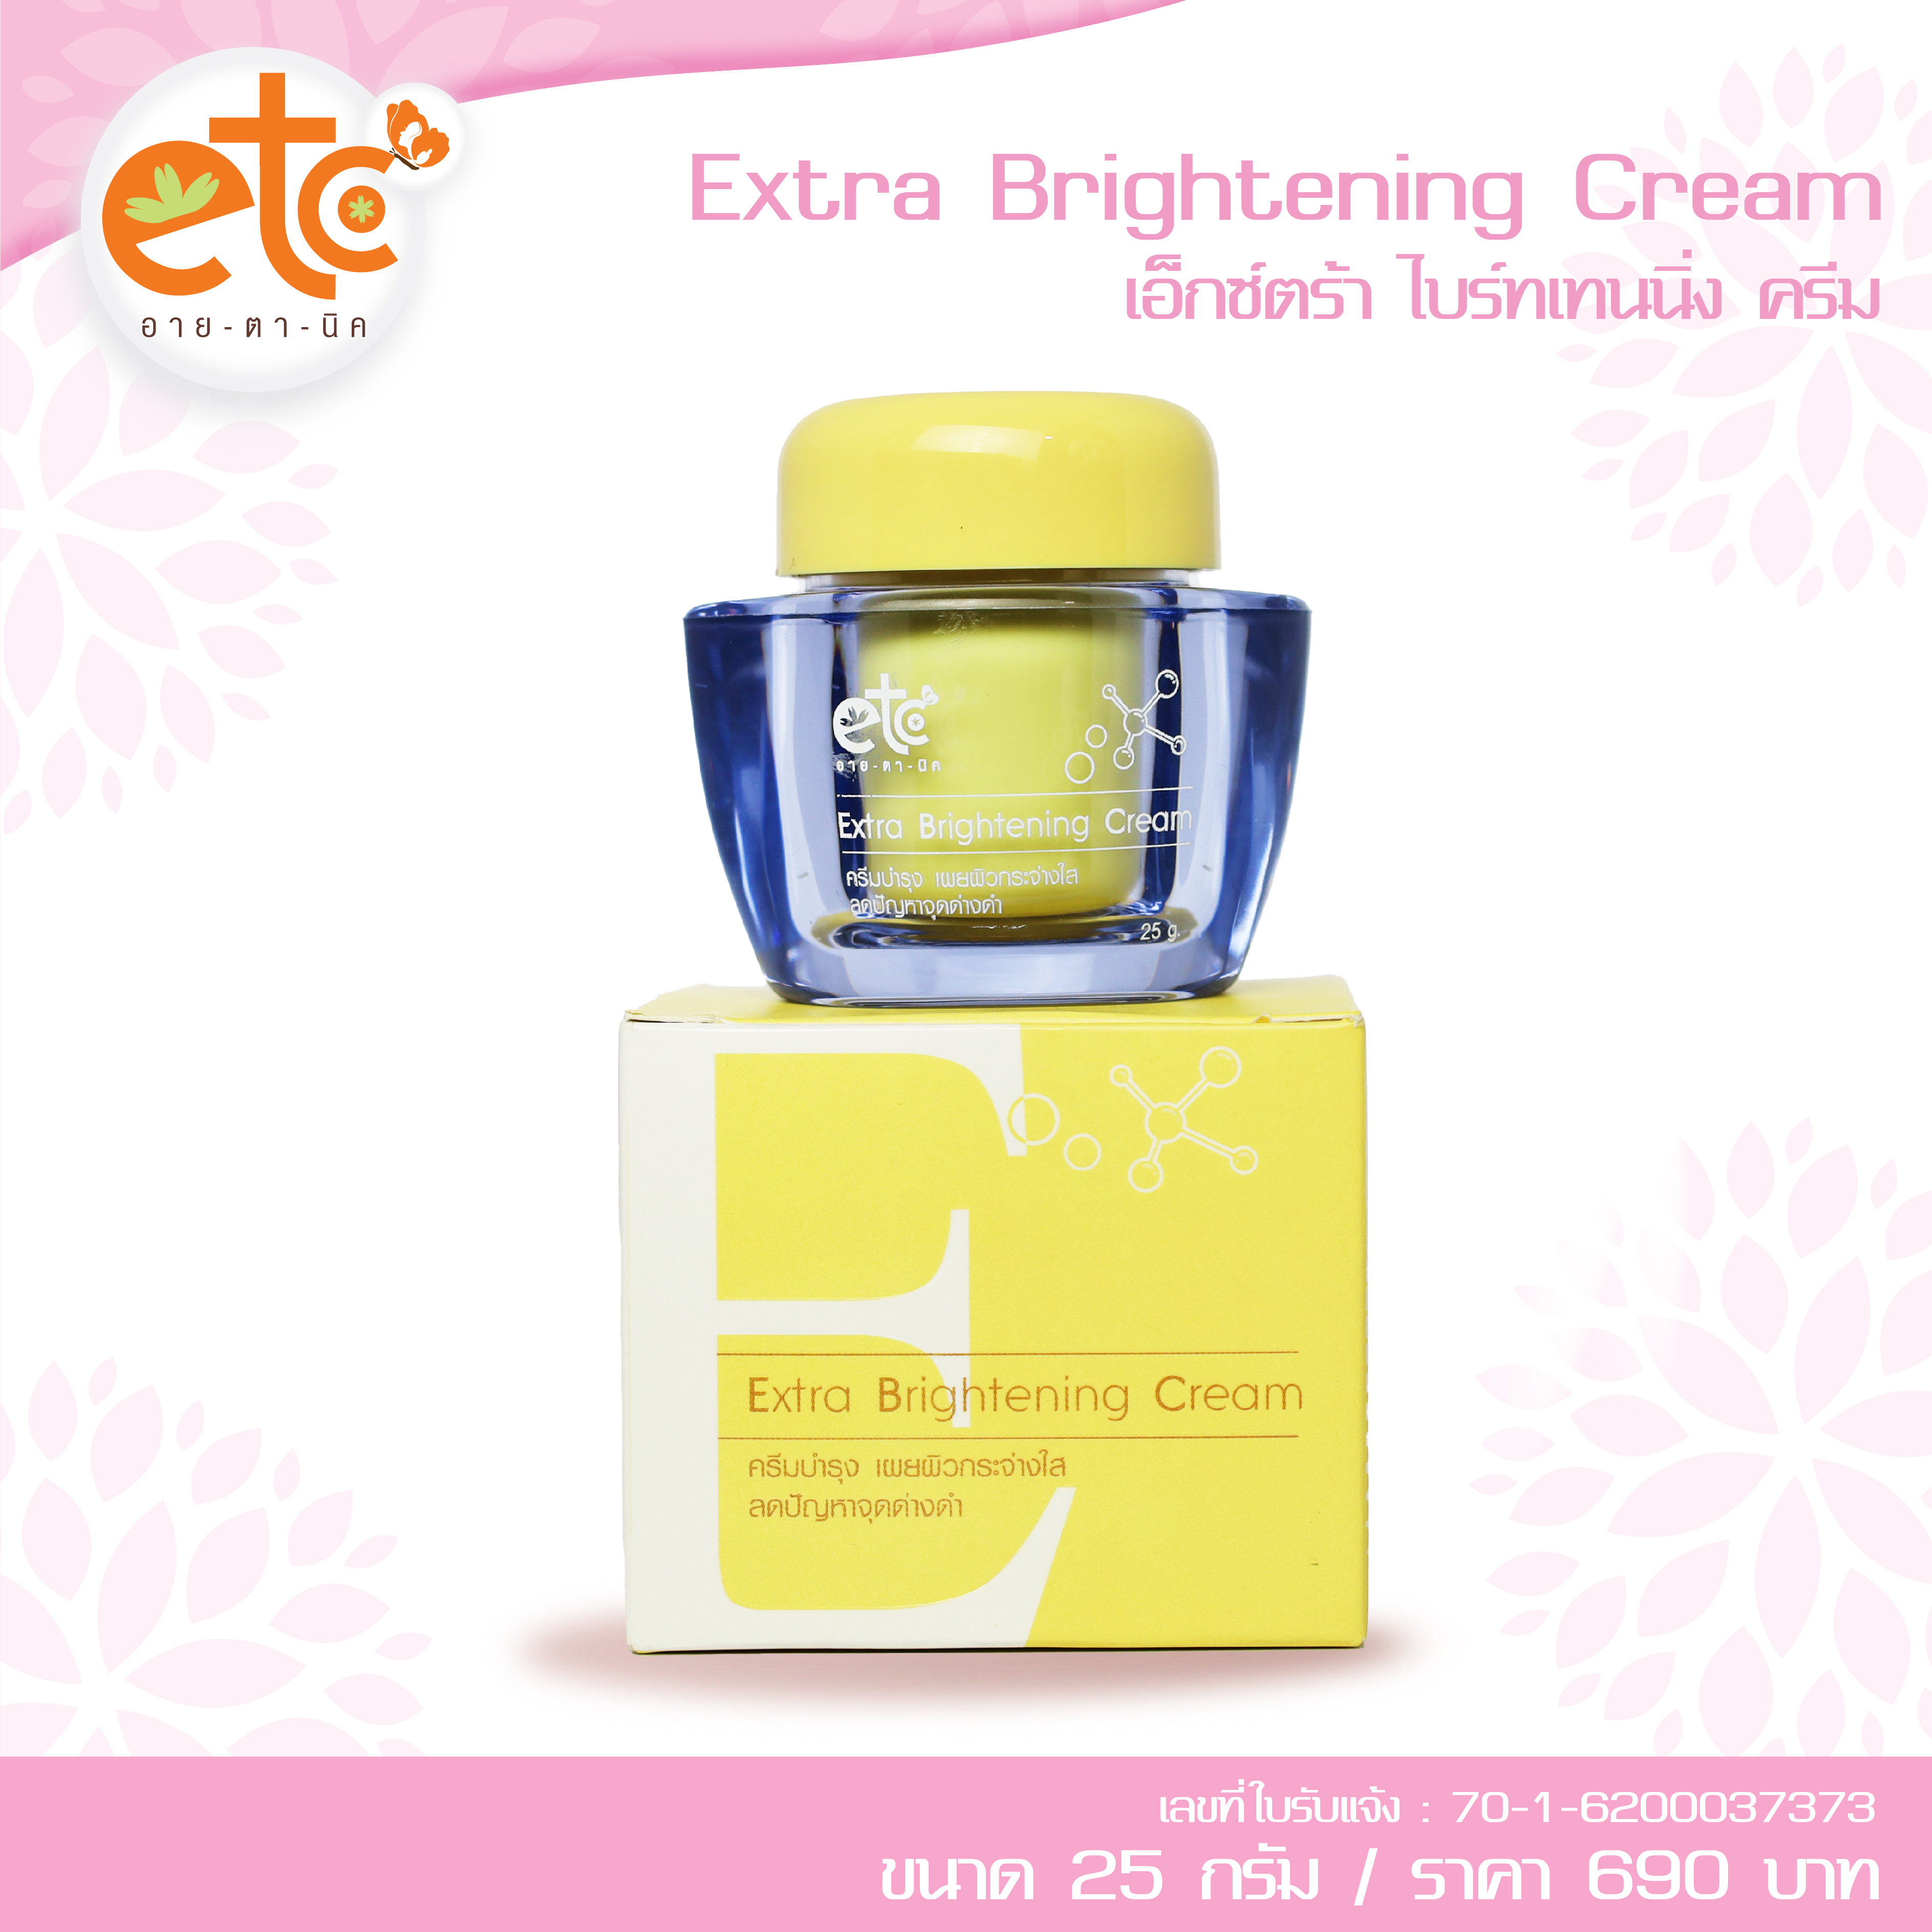 Extra Brightening Cream